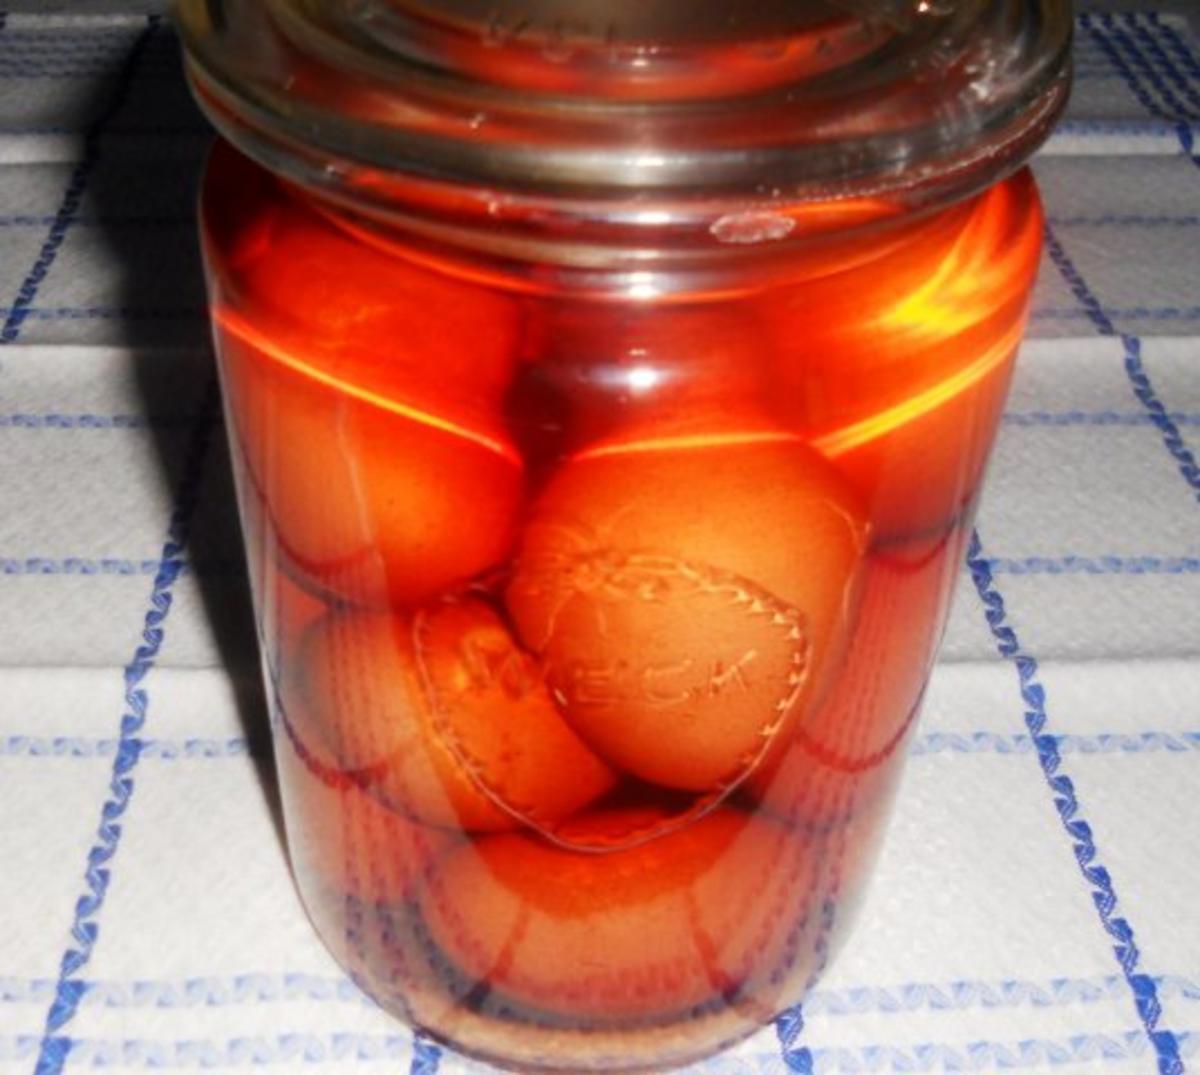 Soleier - à la Erika, diese Eier schmecken nicht nur zu Ostern. (Rzpt.
um 1951) - Rezept By OSB-Cranz